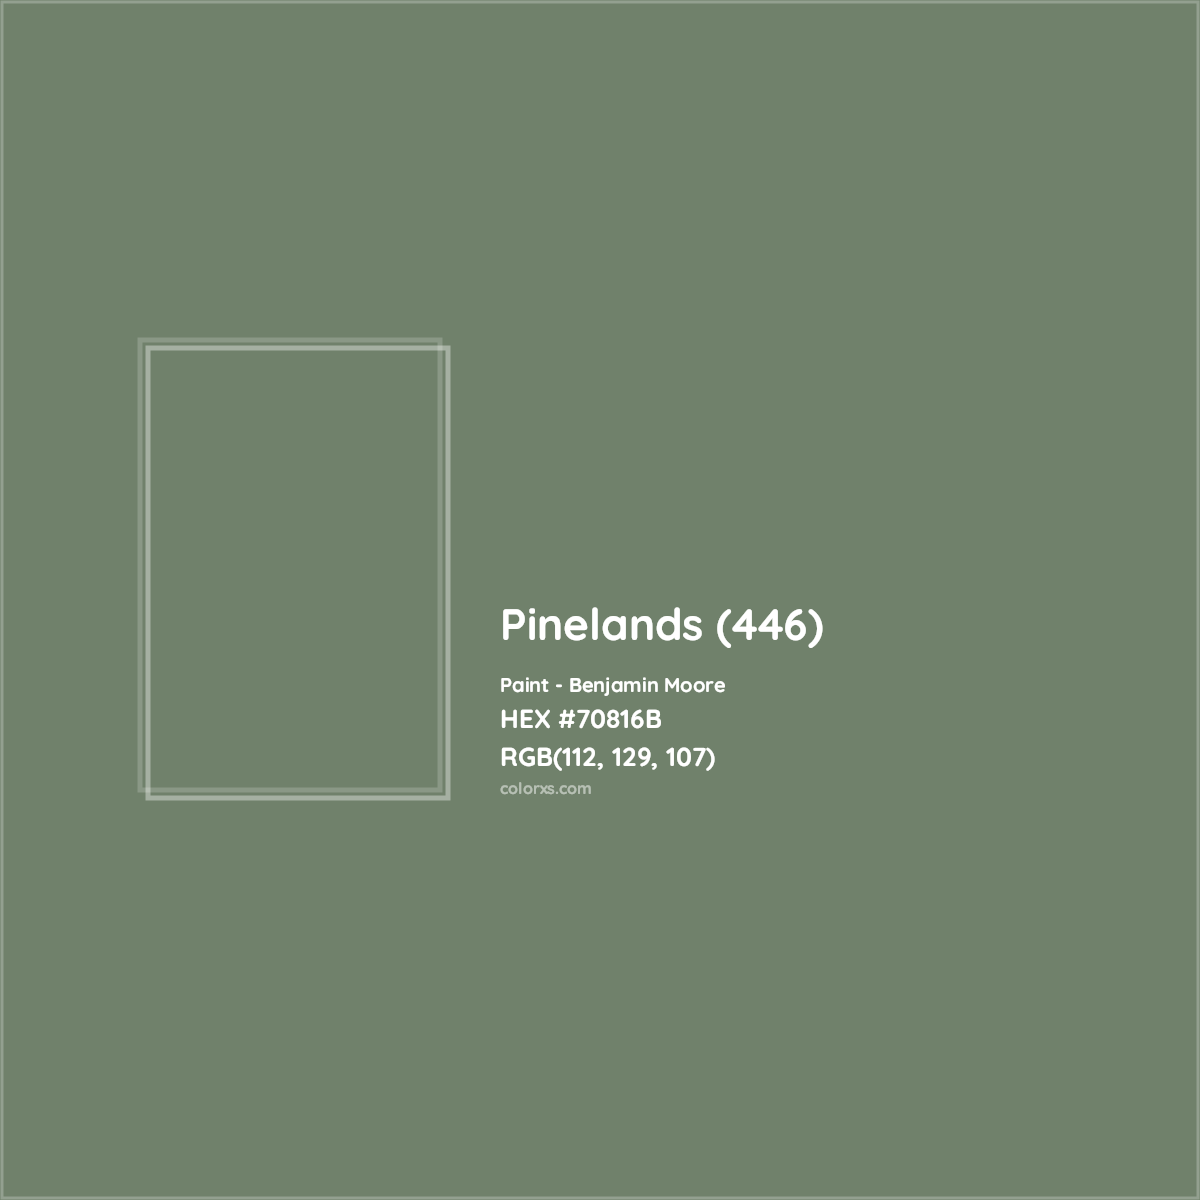 HEX #70816B Pinelands (446) Paint Benjamin Moore - Color Code